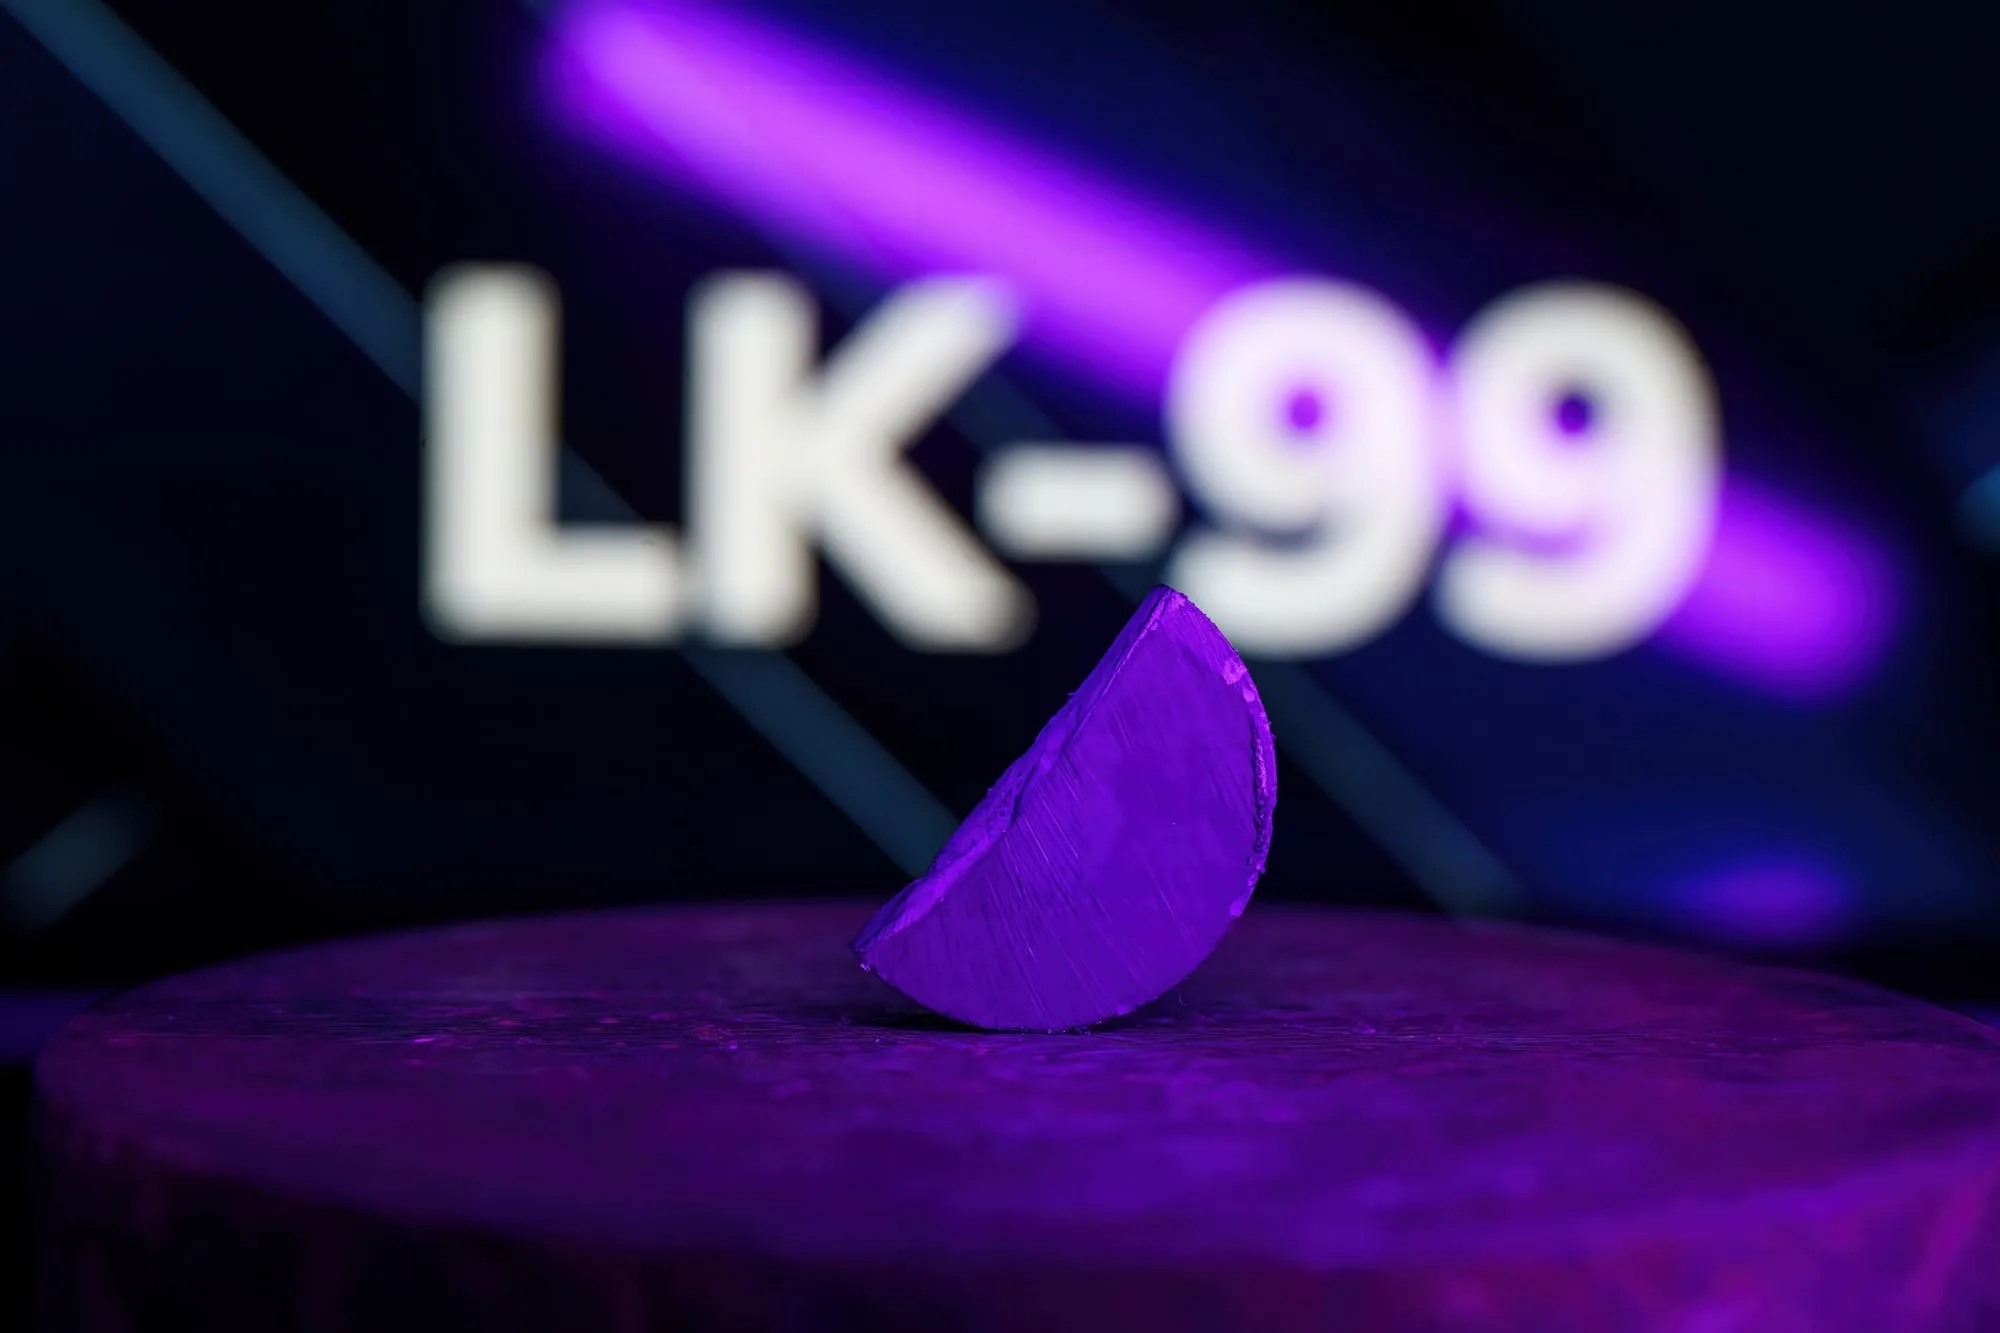 LK-99